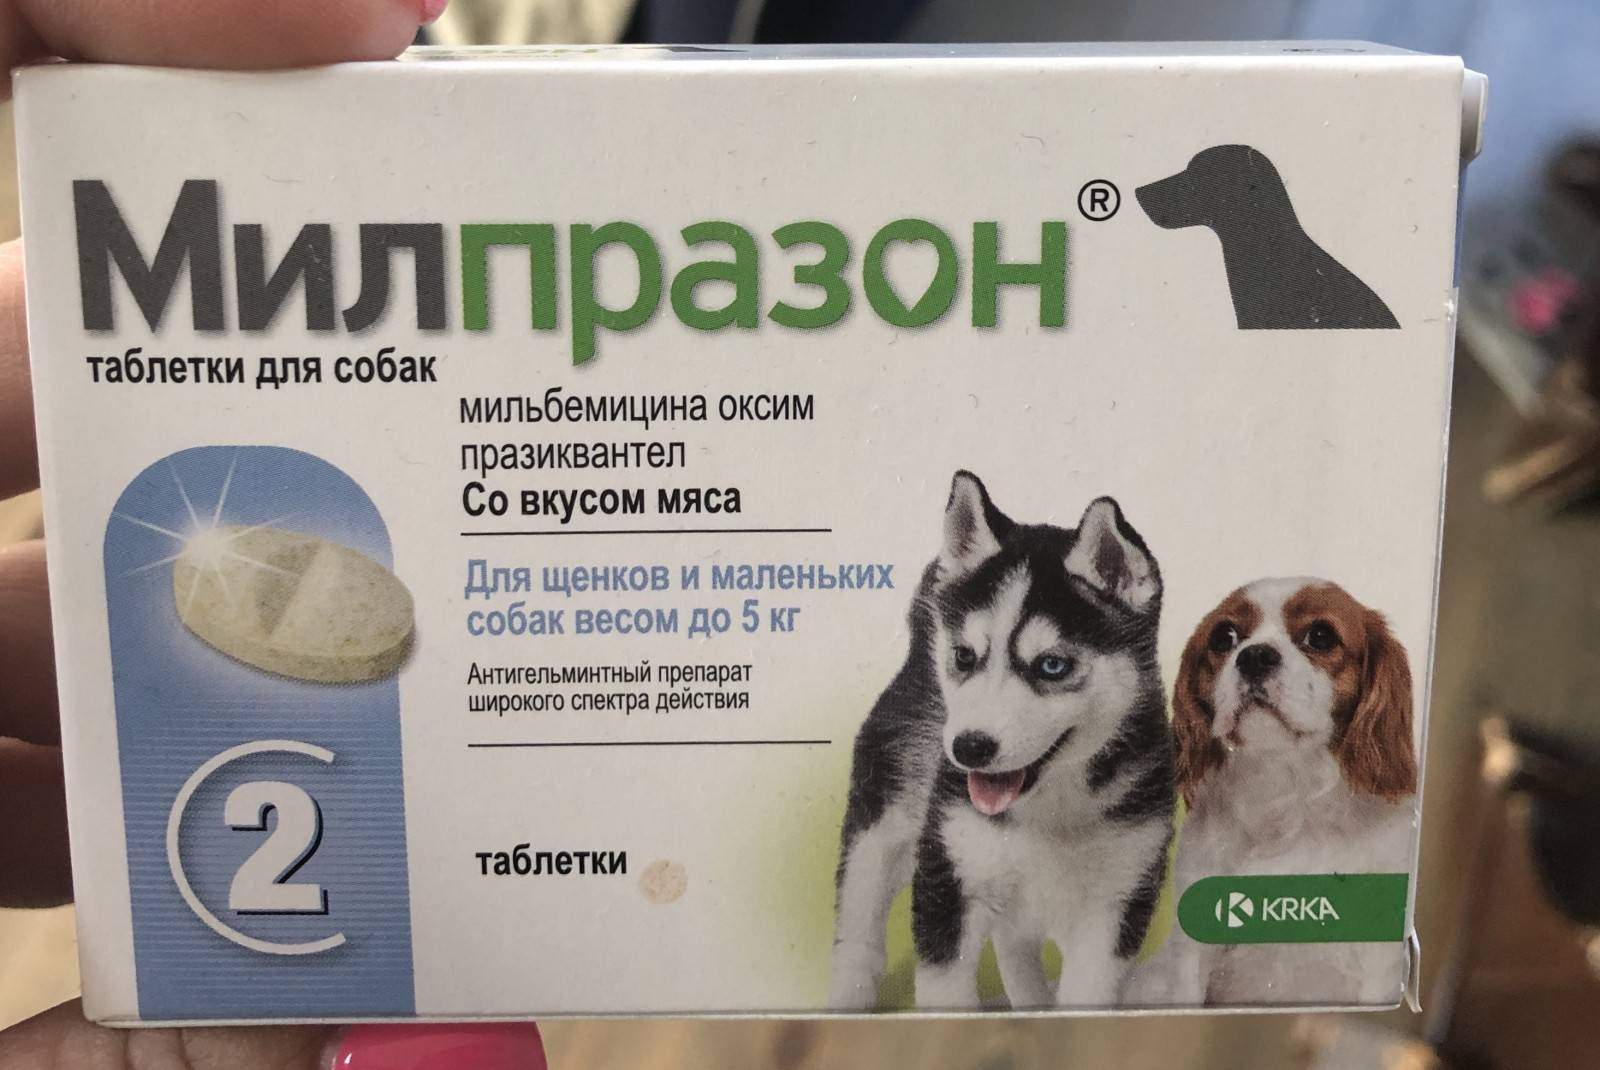 Мать давала таблетки для собак